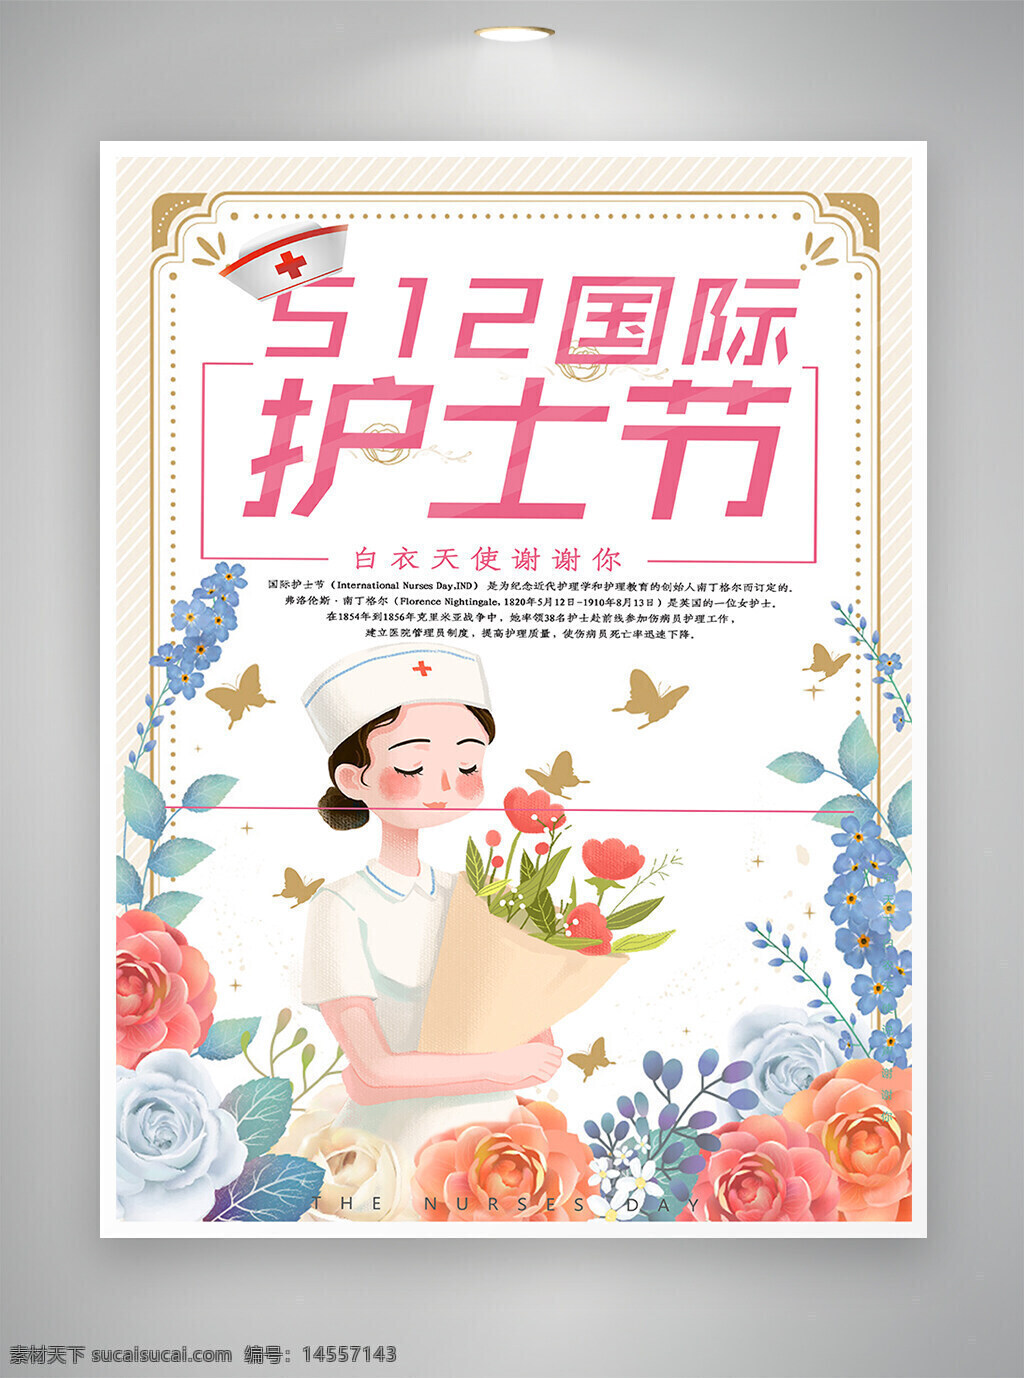 512 512海报 国际护士节 护士节 护士节海报 卡通海报 手绘风 手绘风海报 海报